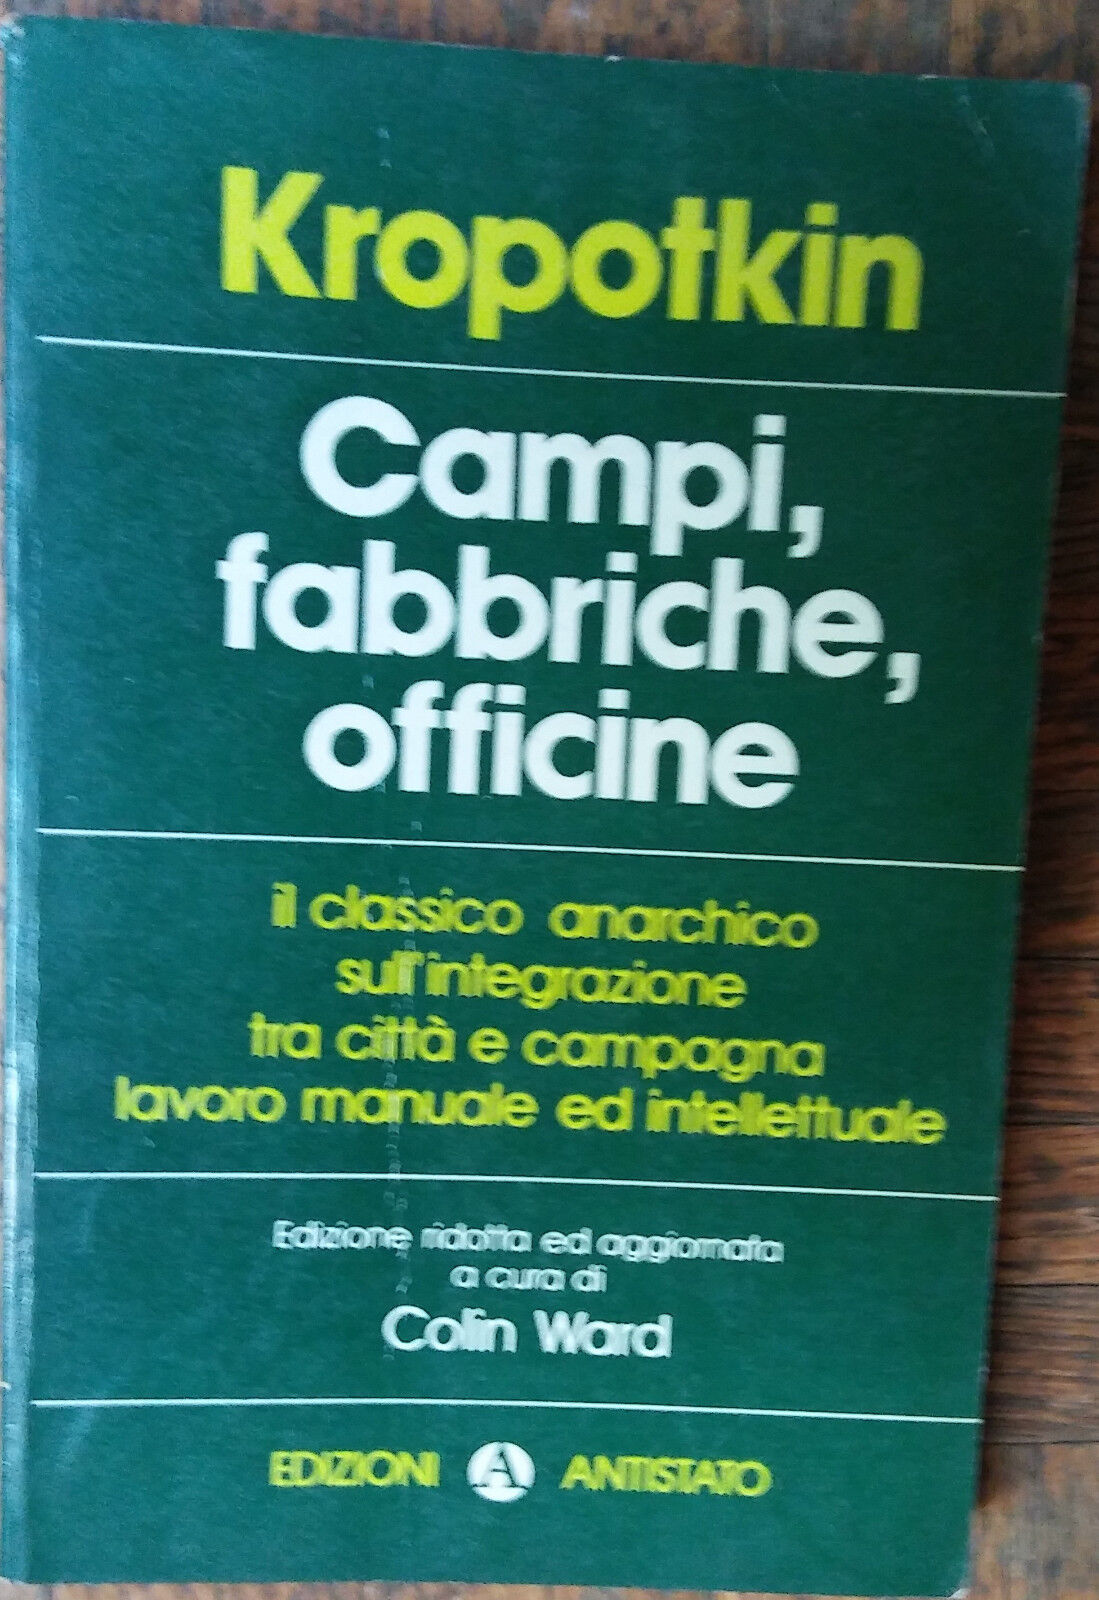 Campi, fabbriche, officine - P?tr Kropotkin - Edizioni Antistato,1975 - R